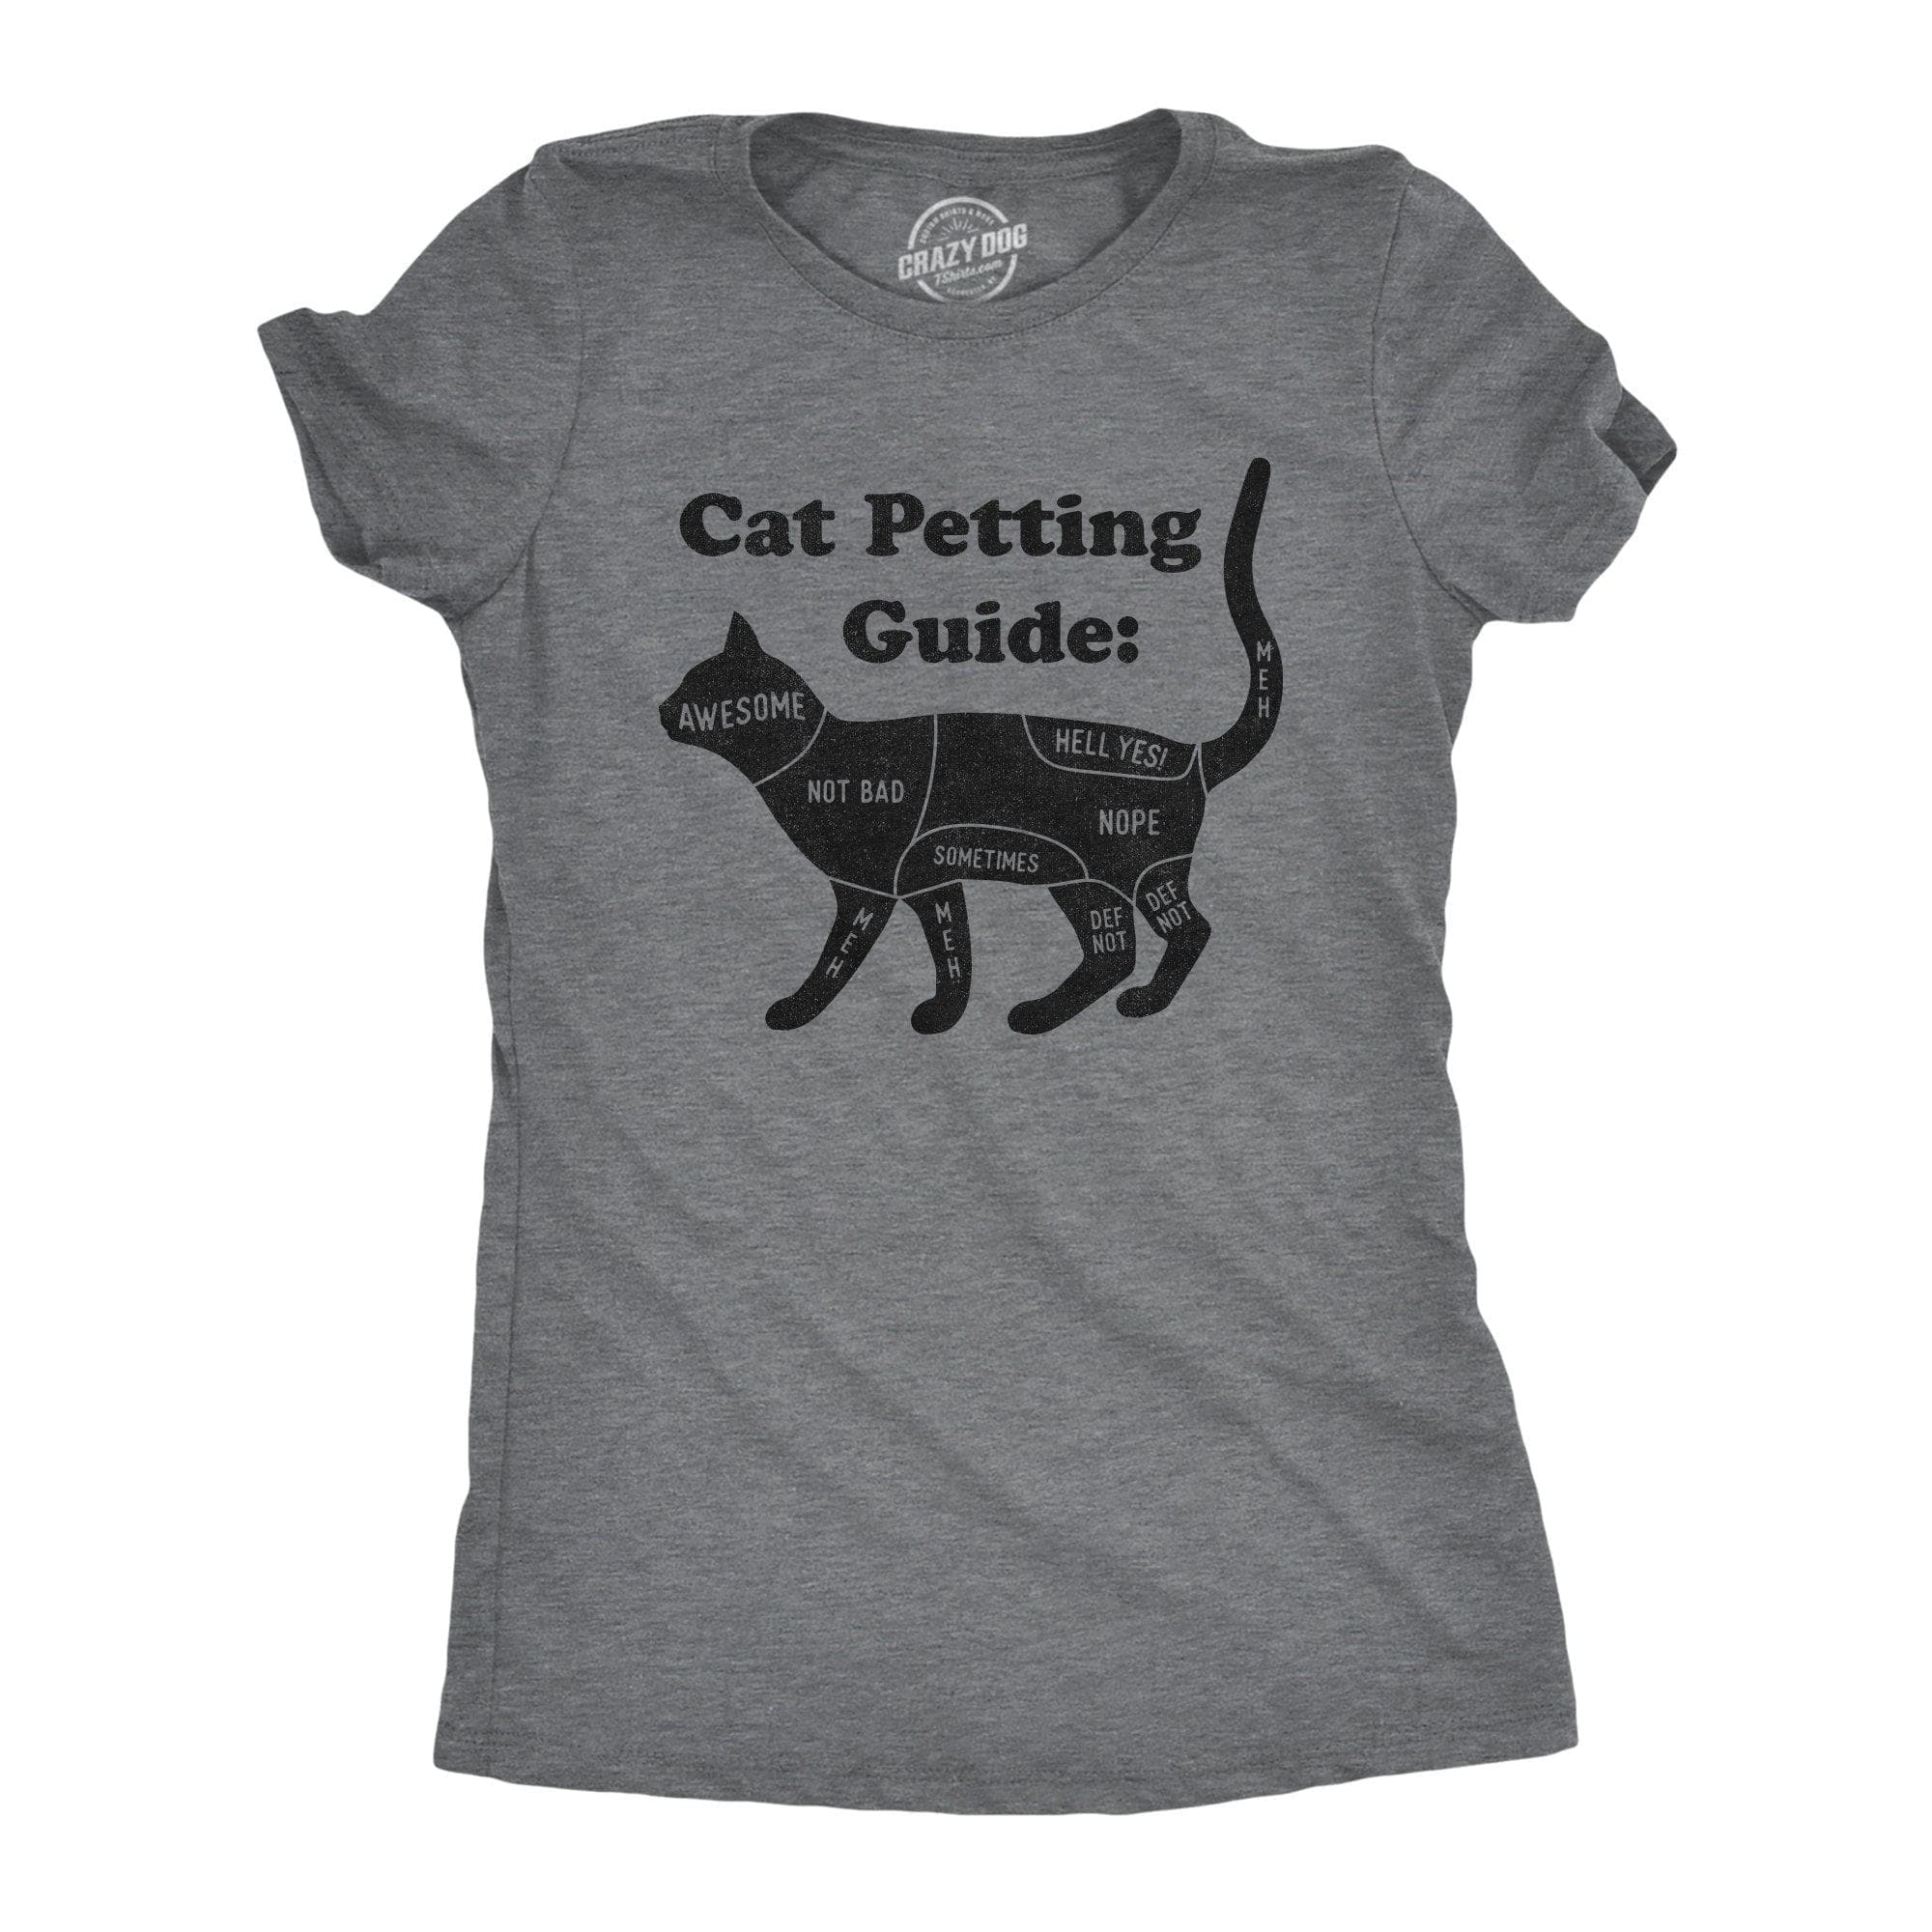 Cat Petting Guide Women's Tshirt - Crazy Dog T-Shirts